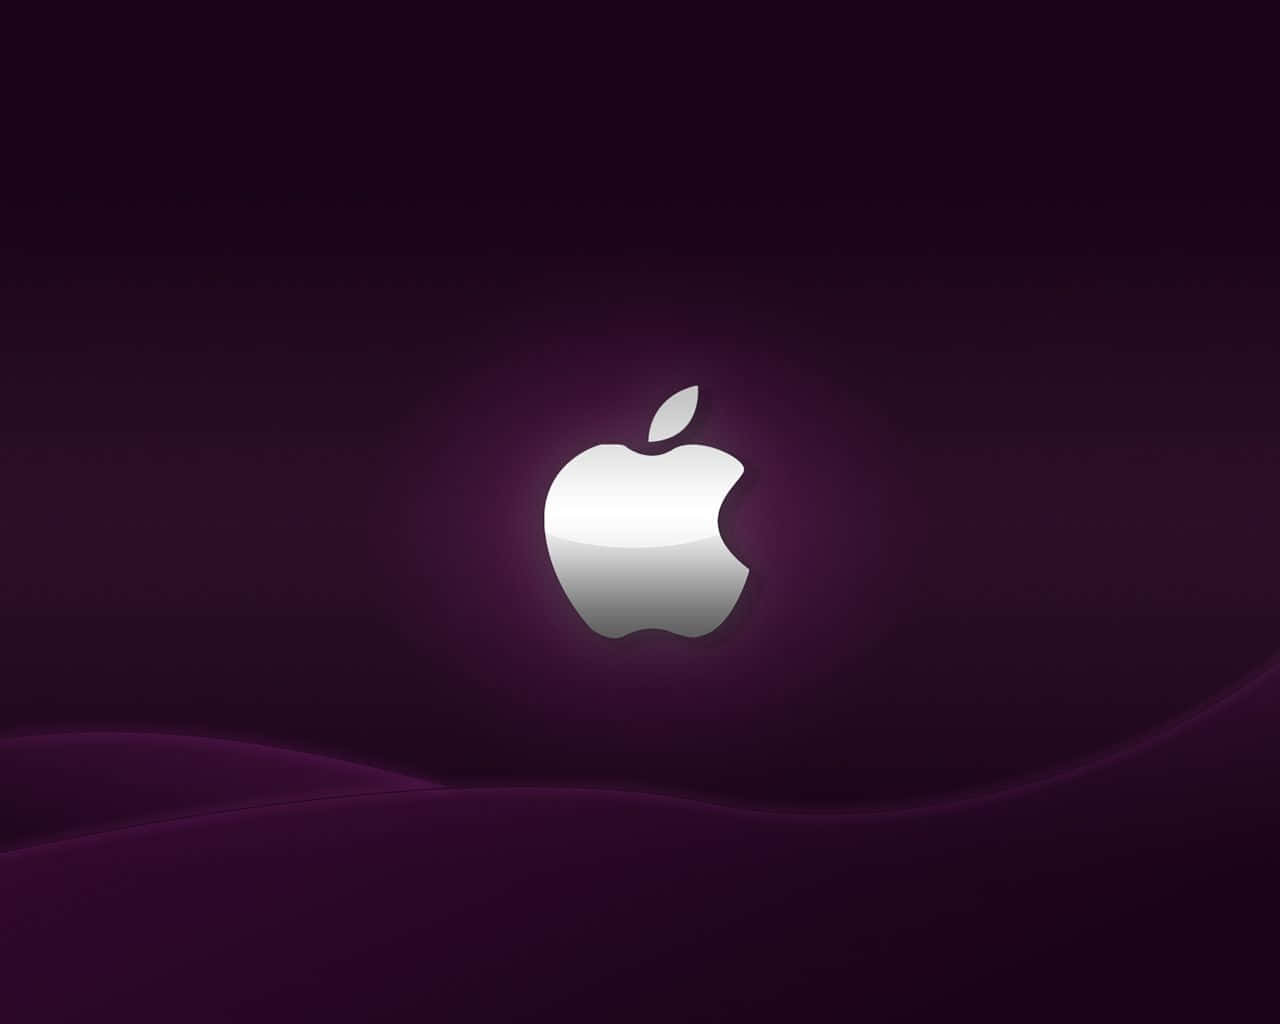 Dunkellilahintergrund Mit Silbernem Logo In Hd Für Apple